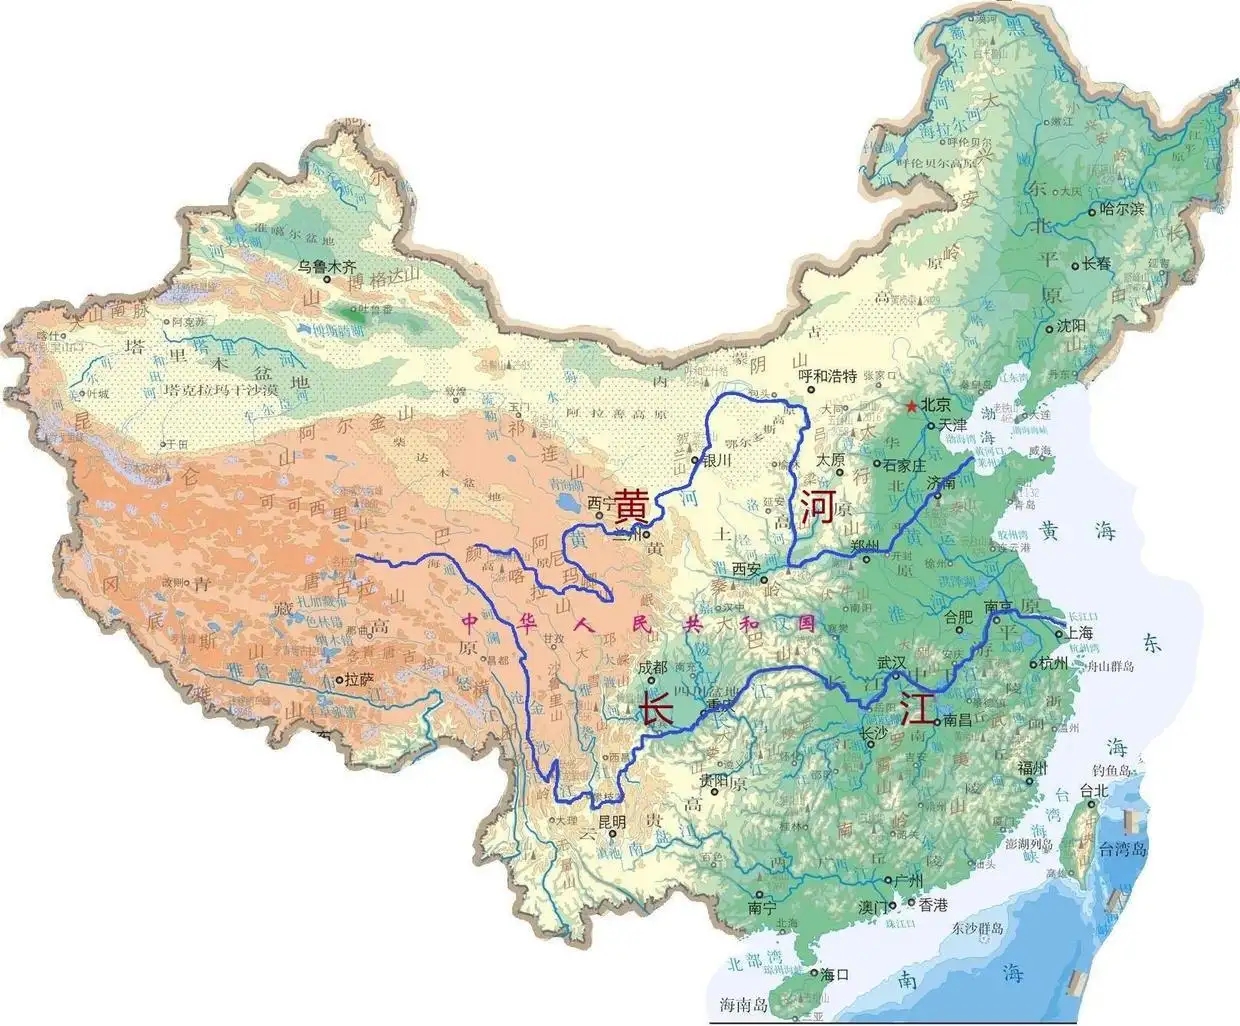 城区跨长江的城市有很多，但跨黄河的城市却只有兰州一个